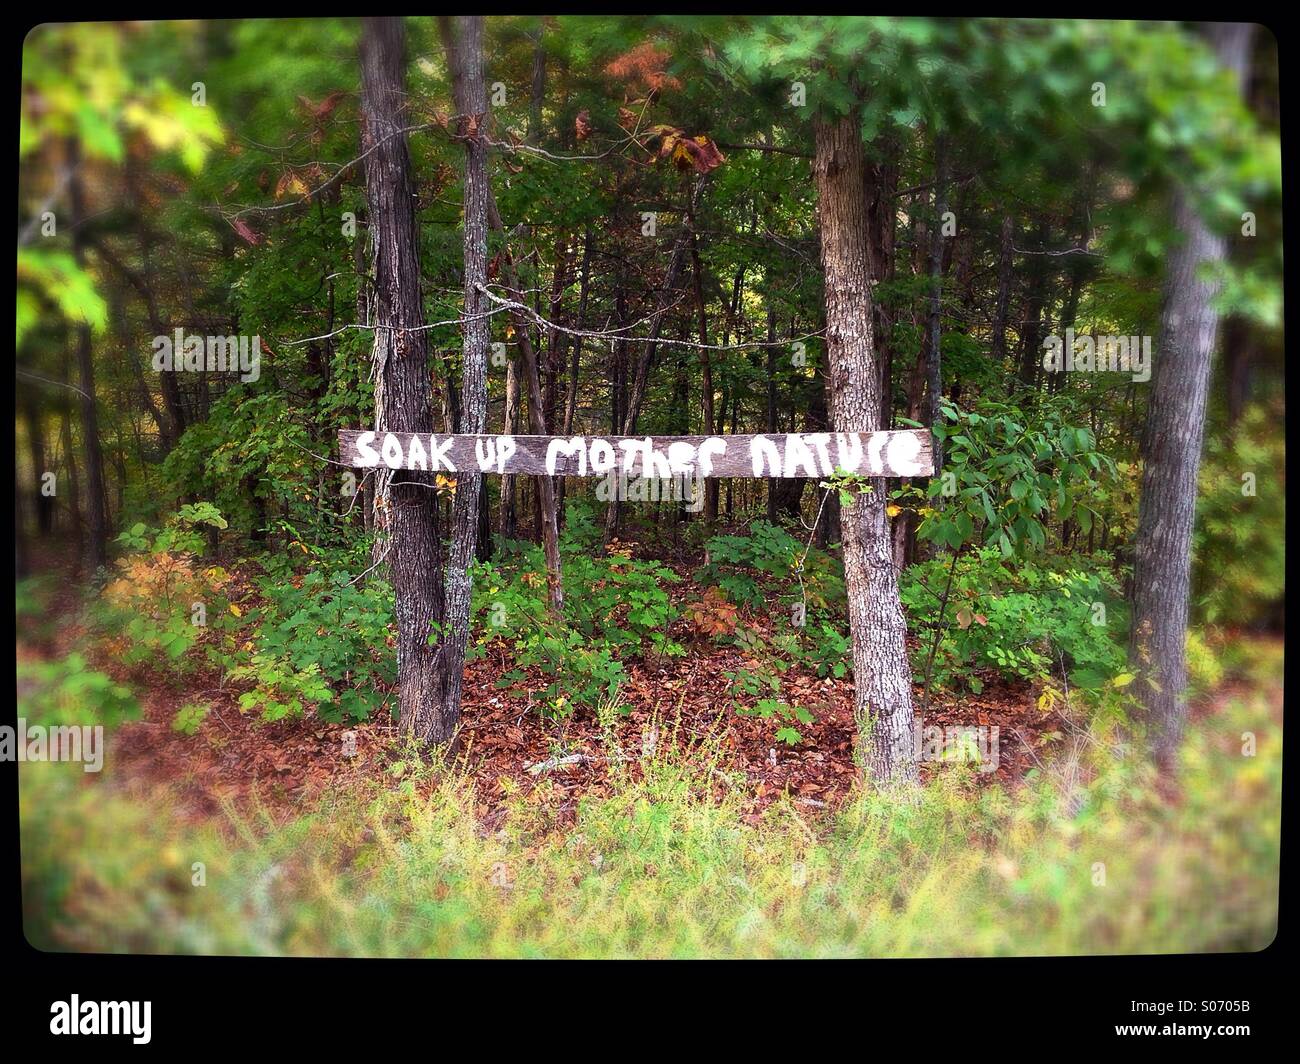 Ein Zeichen in den Wäldern, die liest "Mutter Natur tanken". Stockfoto